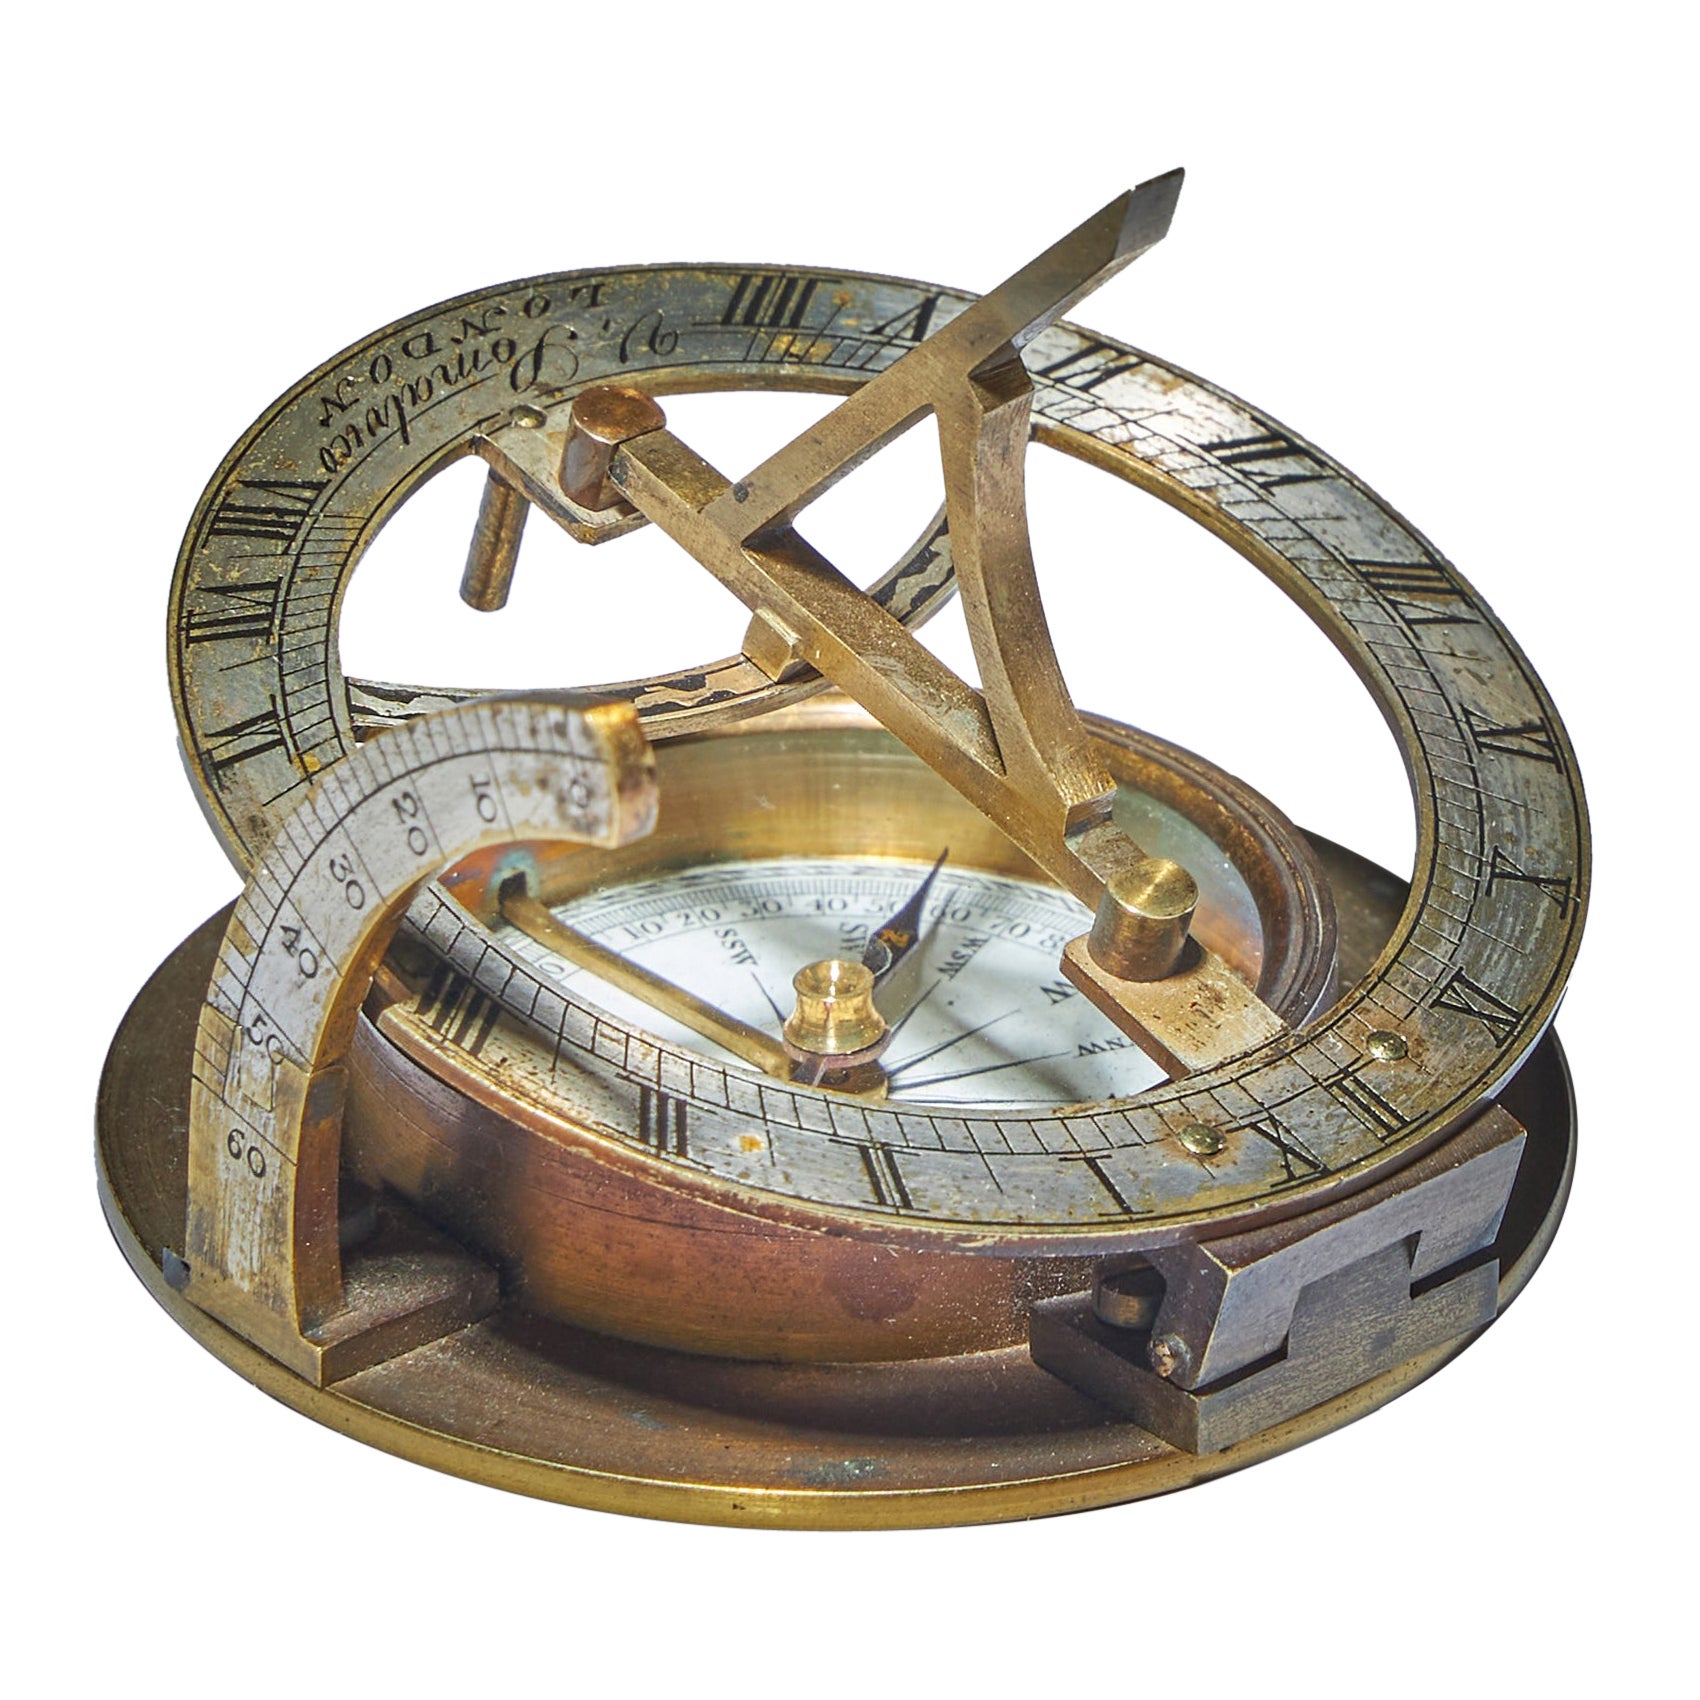 19th Century Equinoctial Pocket Sundial in Original Case, Signed V. Simalvico